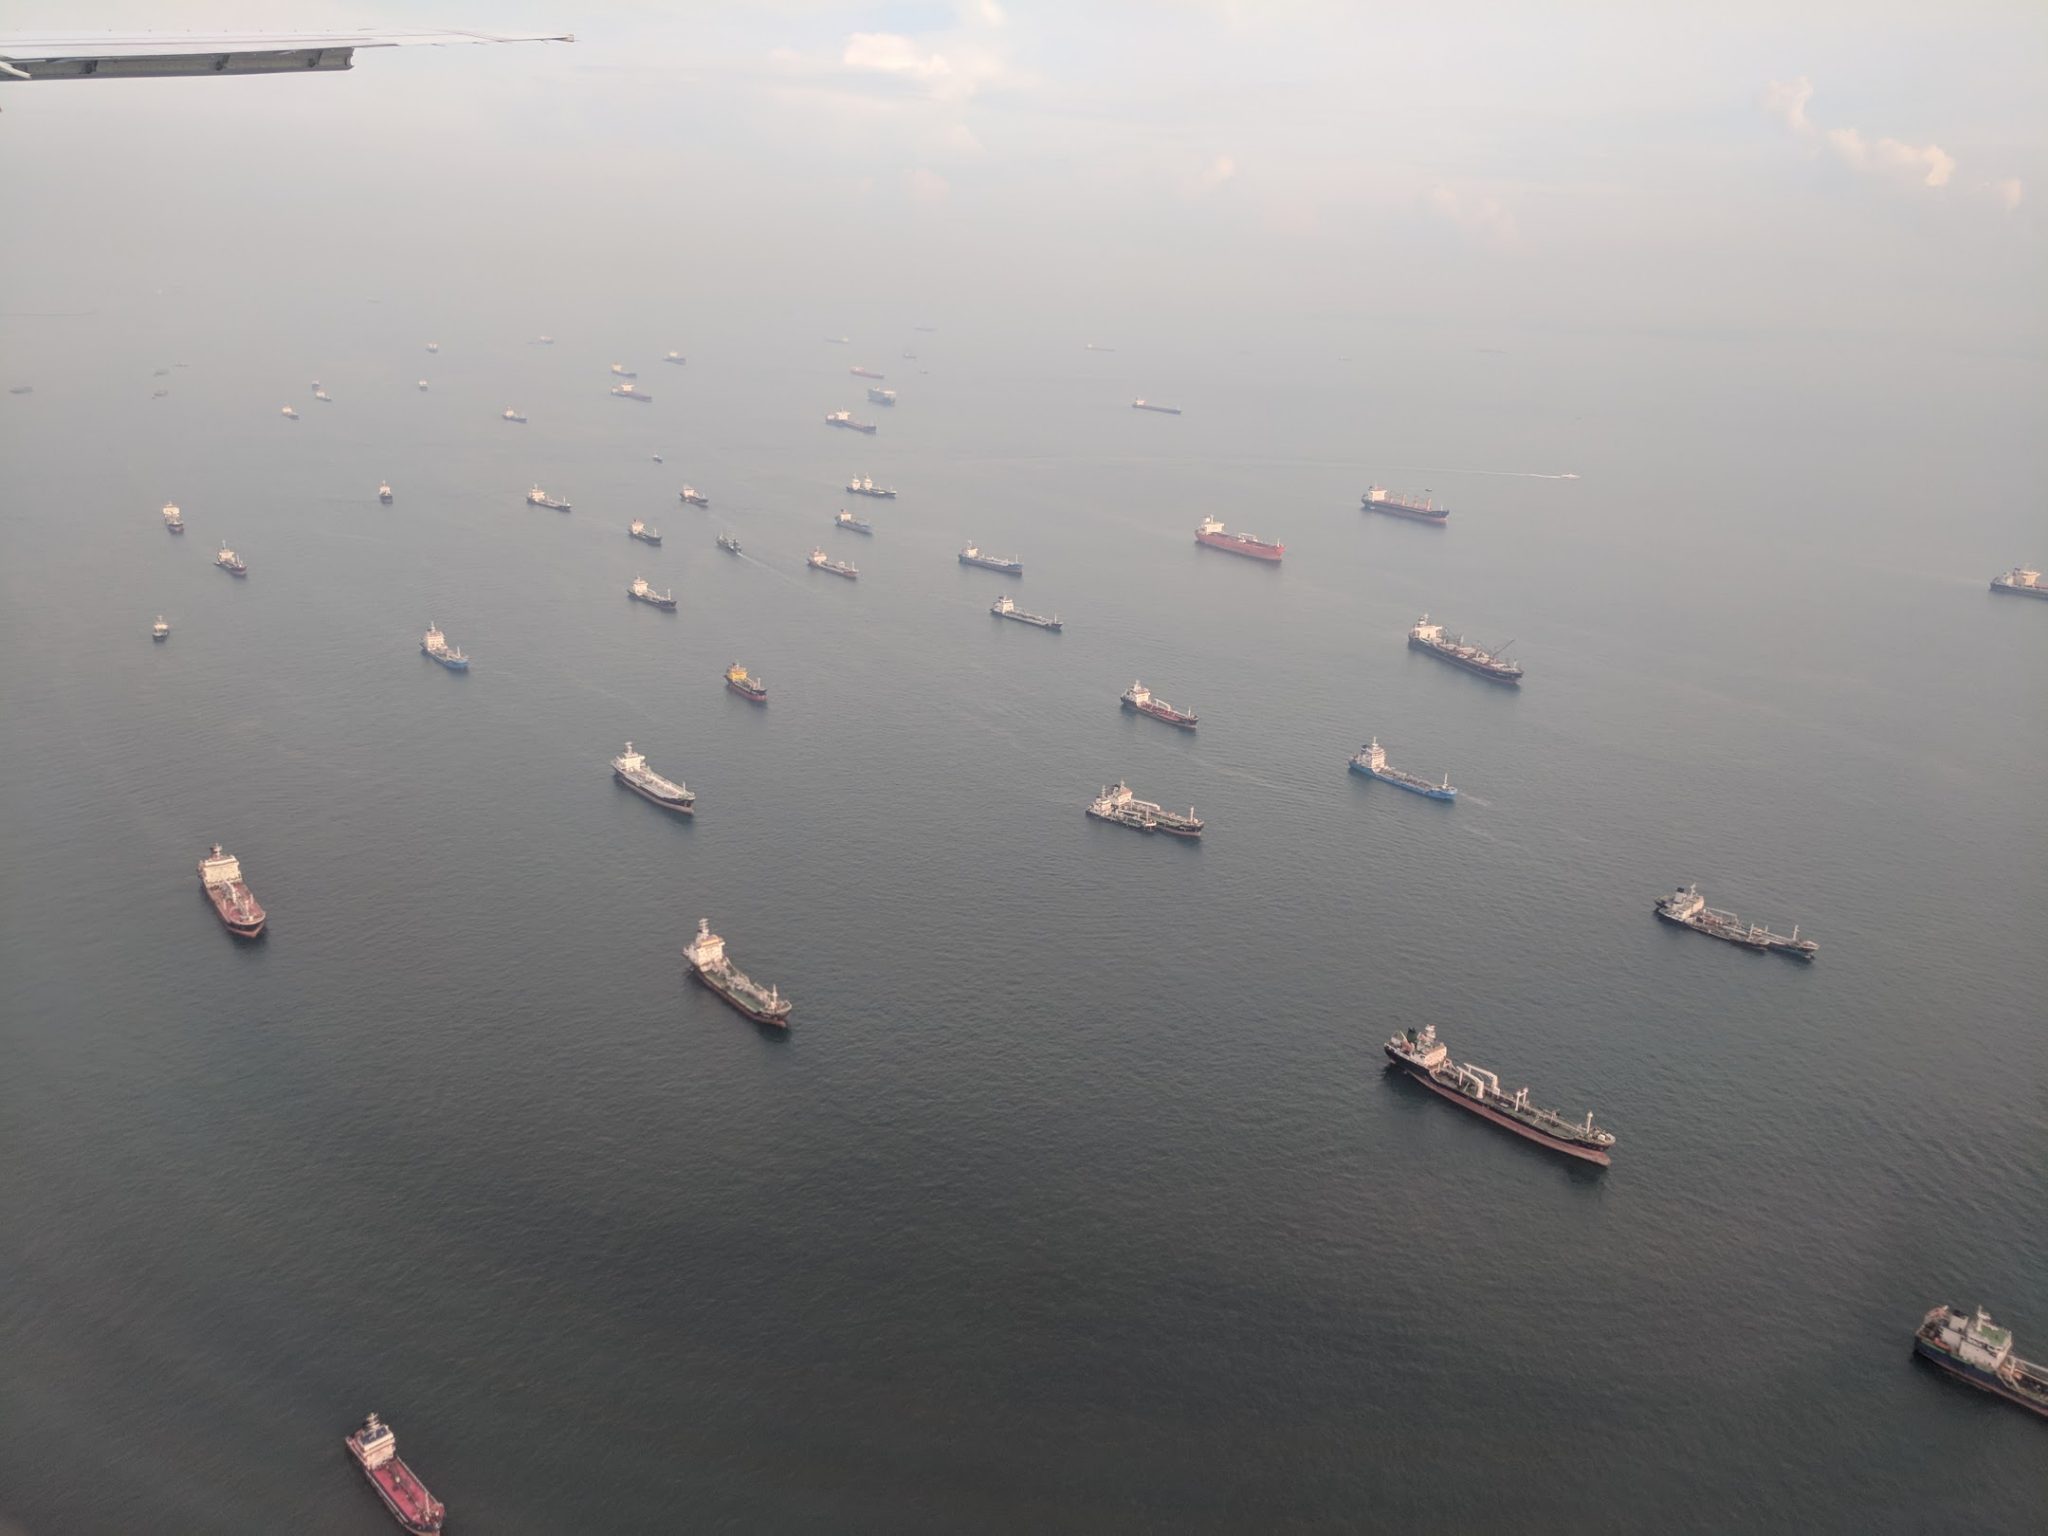 Cargos en mer au large de Singapour.  Photo de Michael Petch.